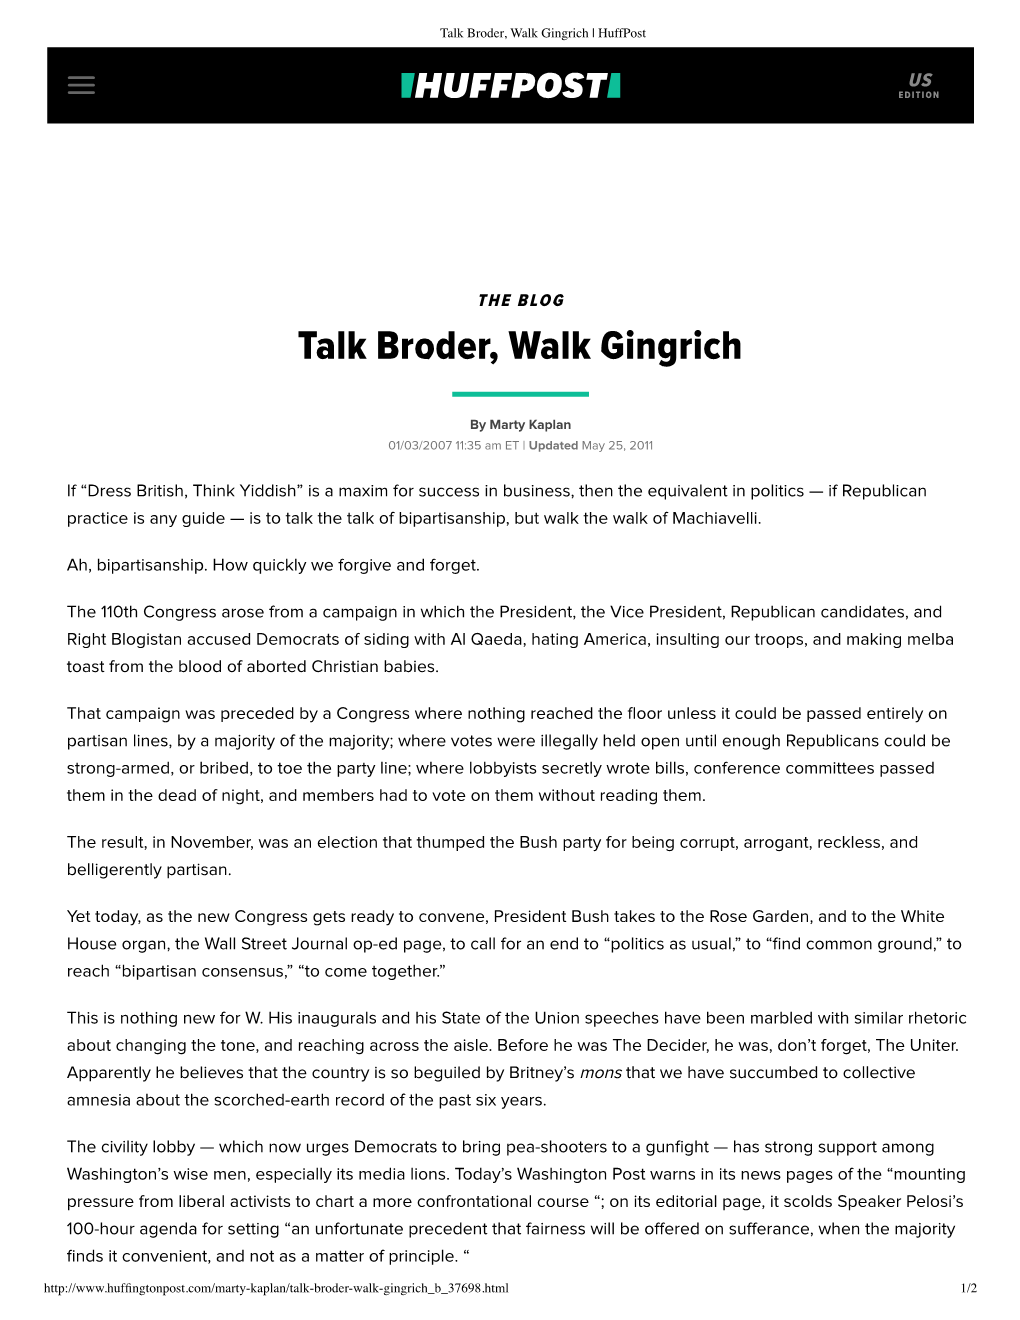 010307 Talk Broder, Walk Gingrich